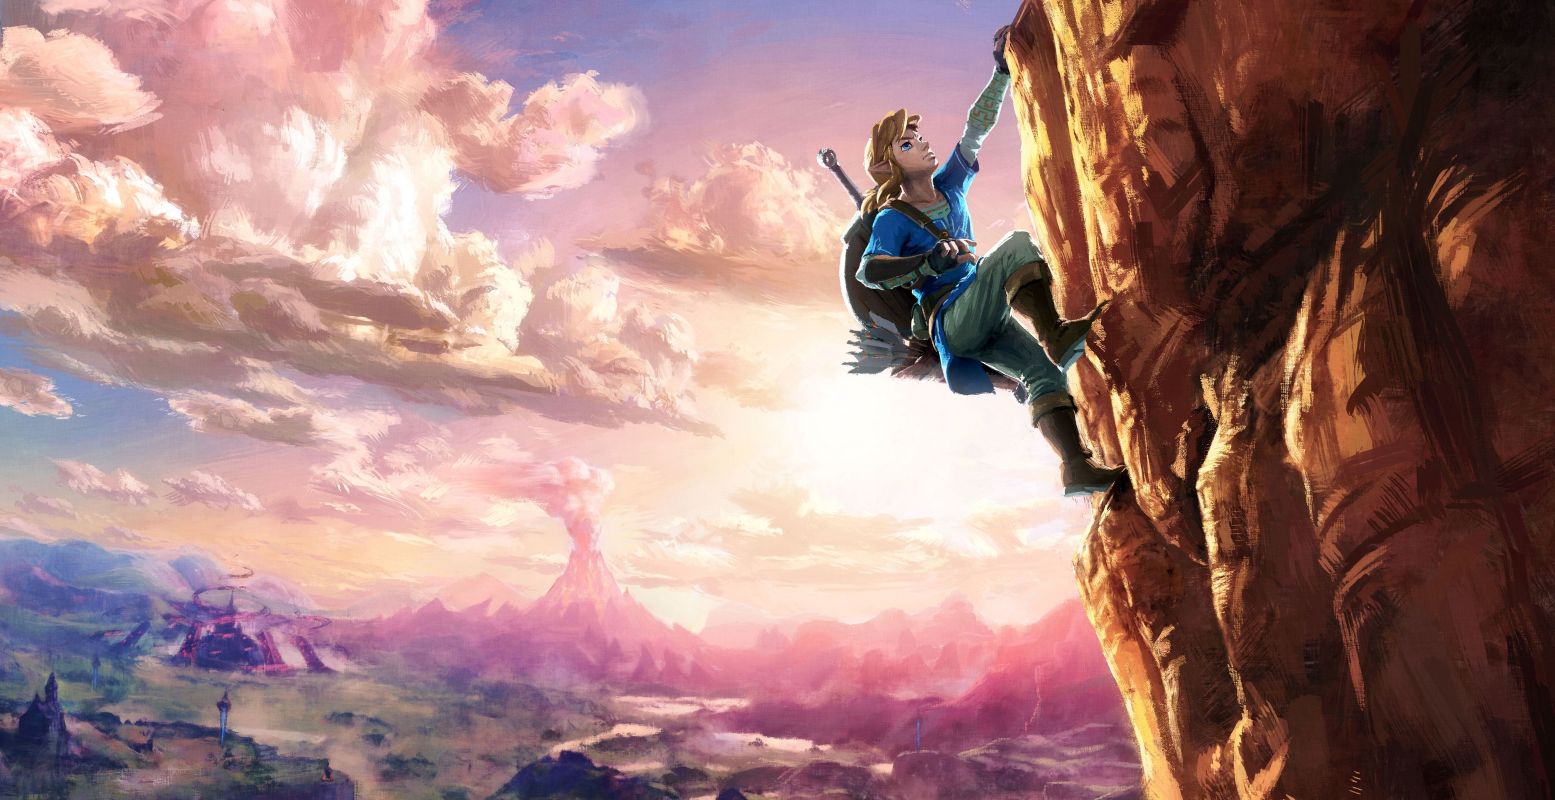 De expositie opent met een enorme afbeelding van de held Link, die een berg beklimt. Breath of the Wild spelers herkennen deze afbeelding meteen. Foto: Breath of the Wild © (2017) Nintendo